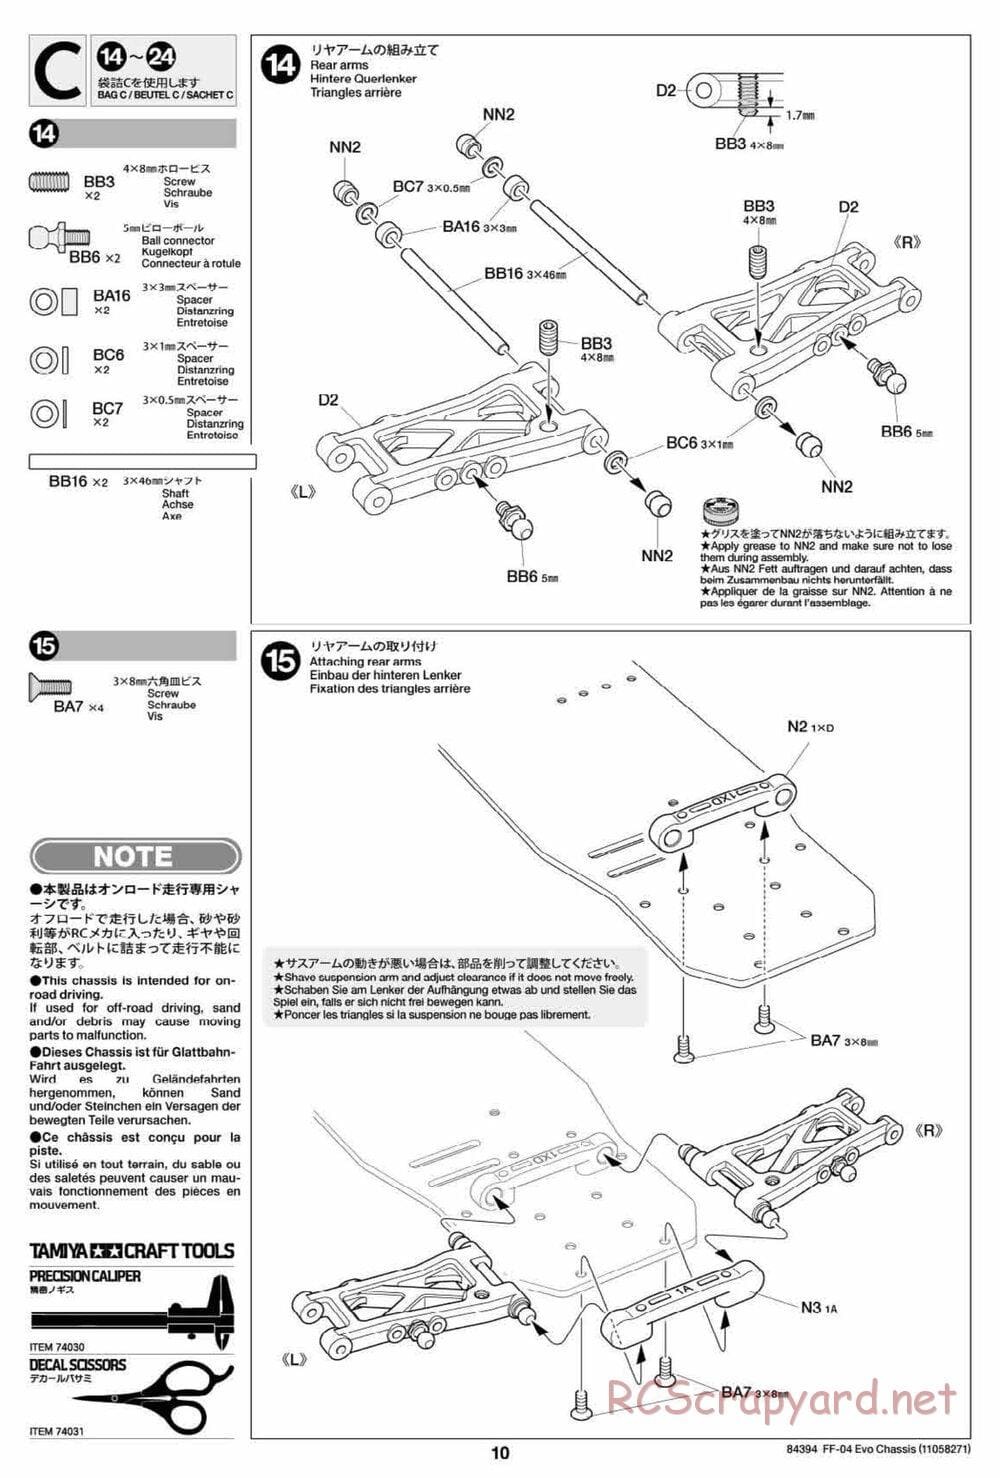 Tamiya - FF-04 Evo Chassis - Manual - Page 10